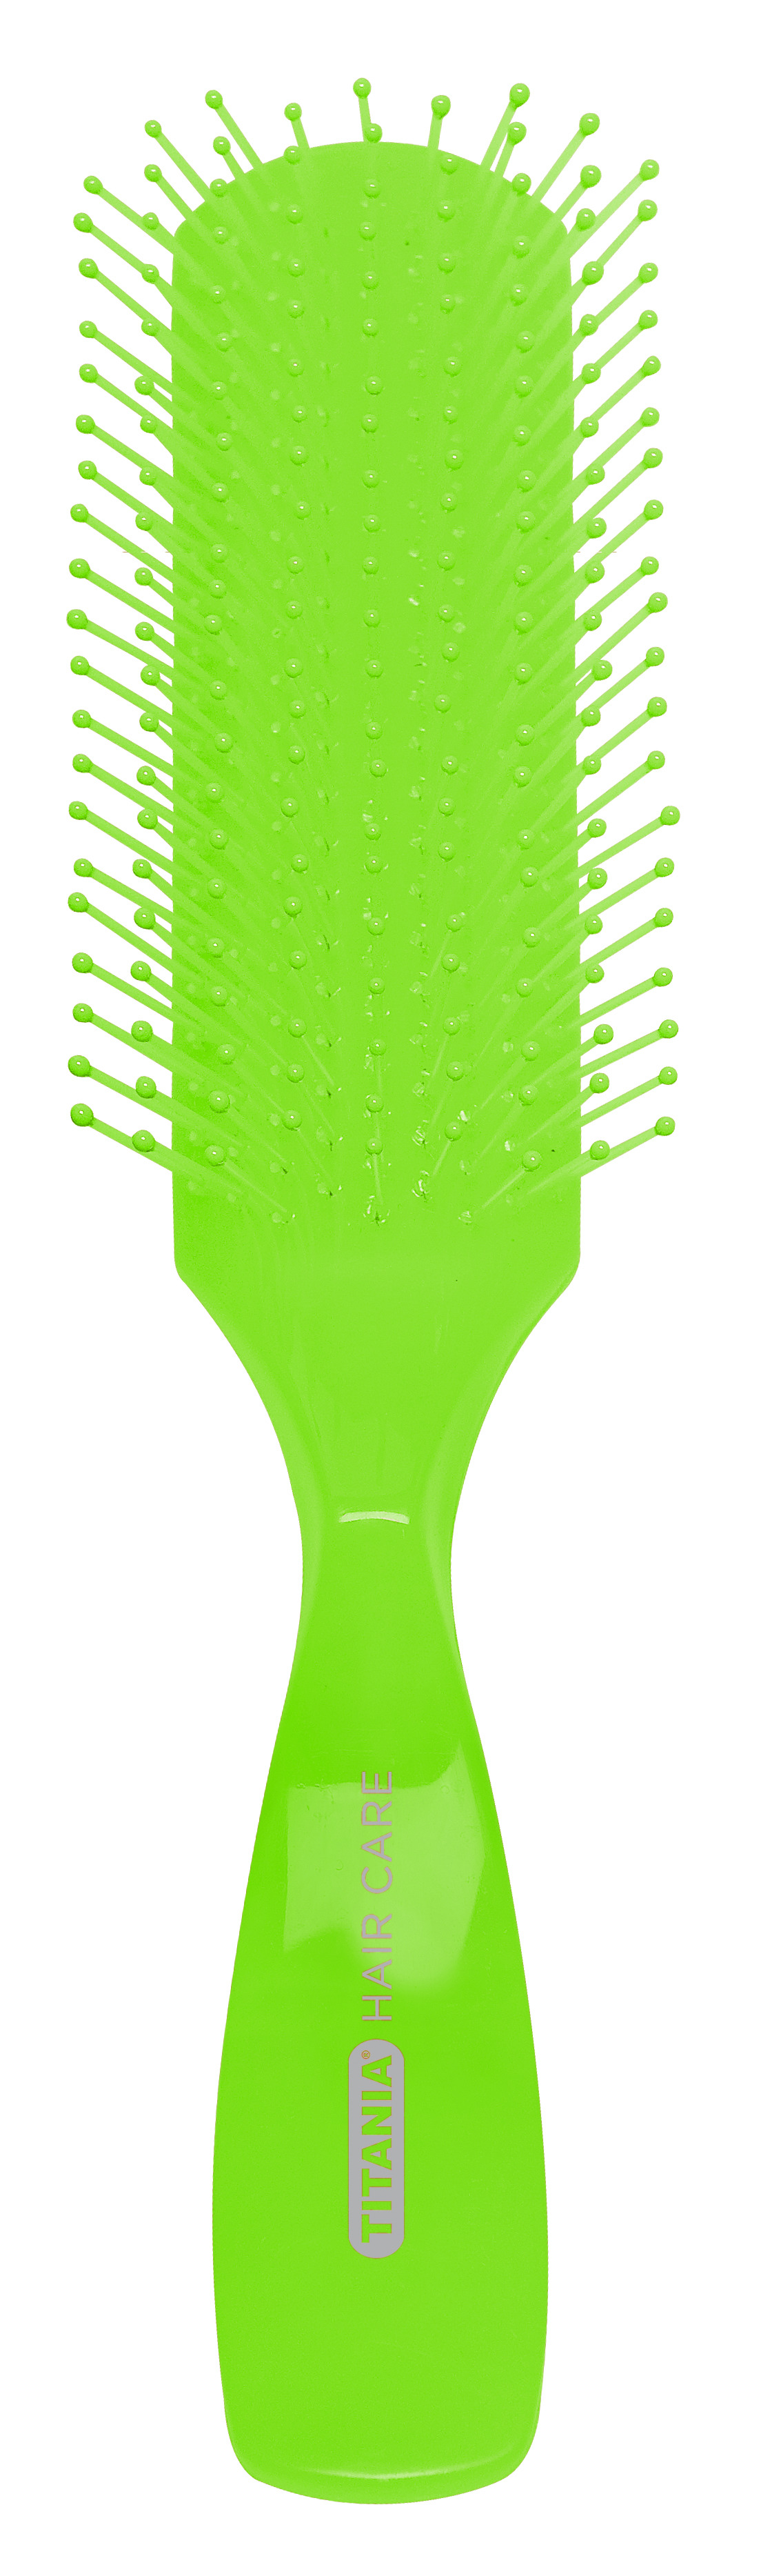 Щітка для волосся Titania масажна, 9 рядів, зелений (1830 зел) - фото 1